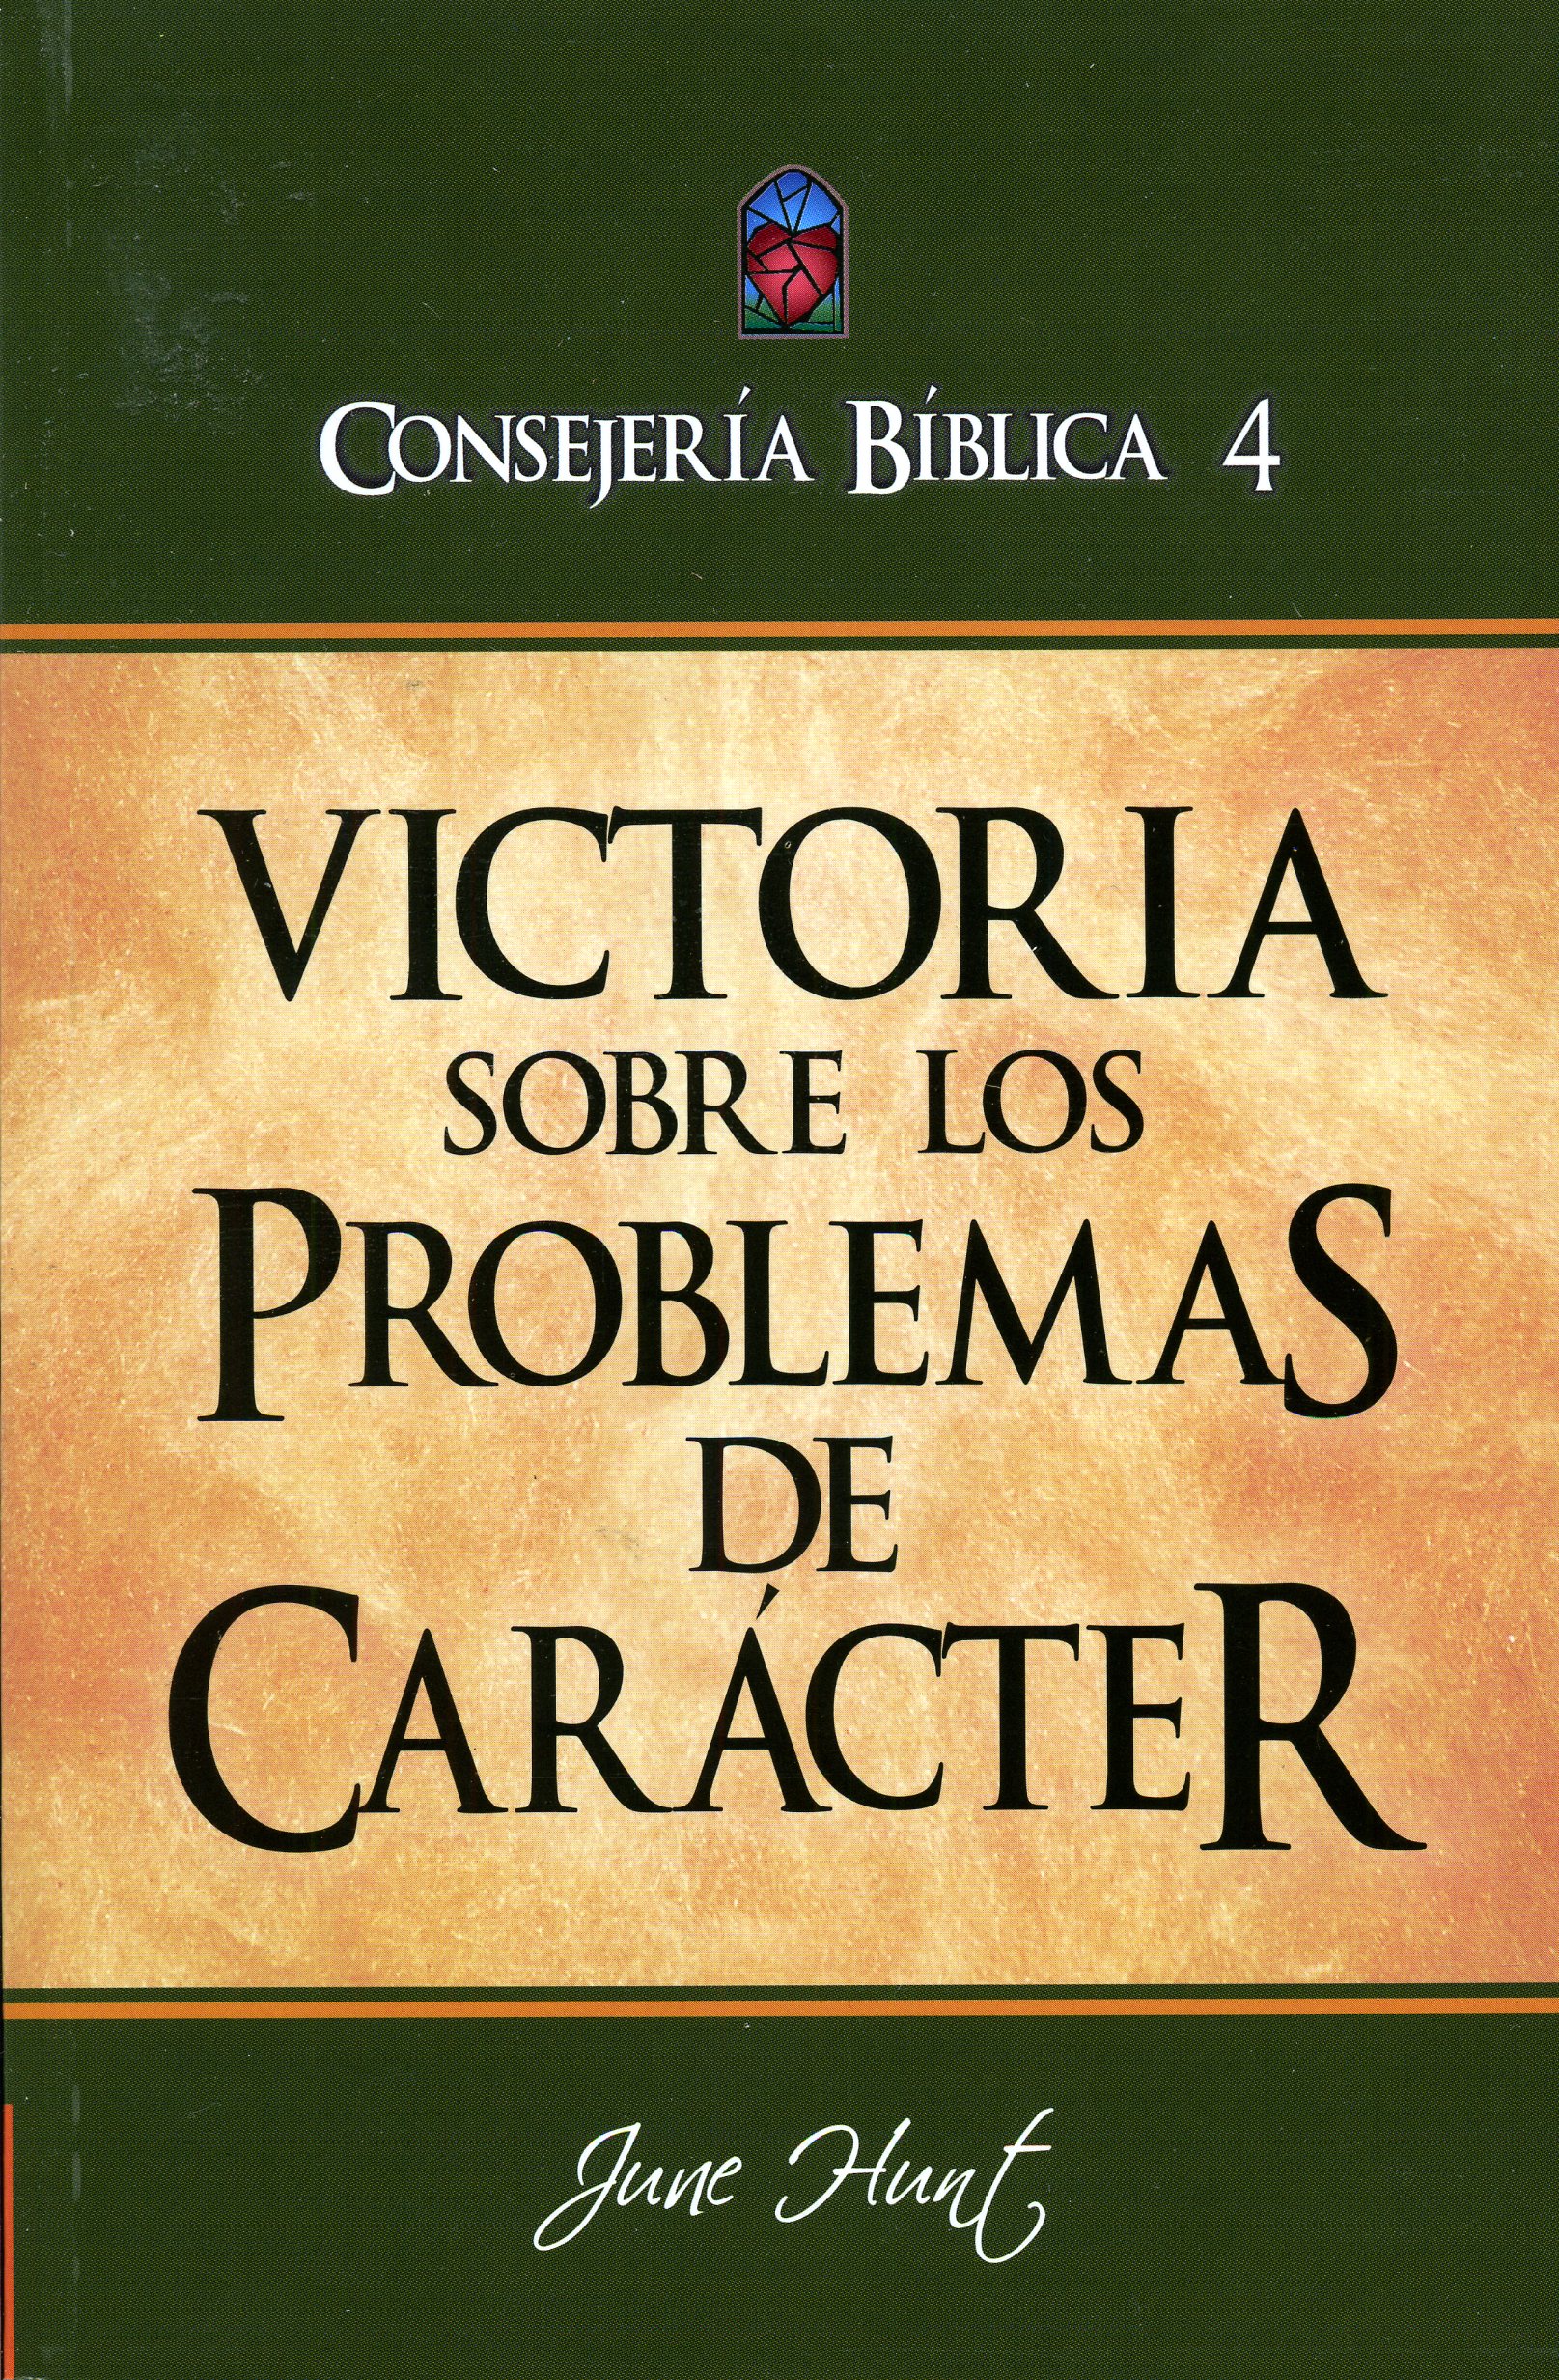 Consejería Bíblica 4 - Victoria sobre los problemas de carácter